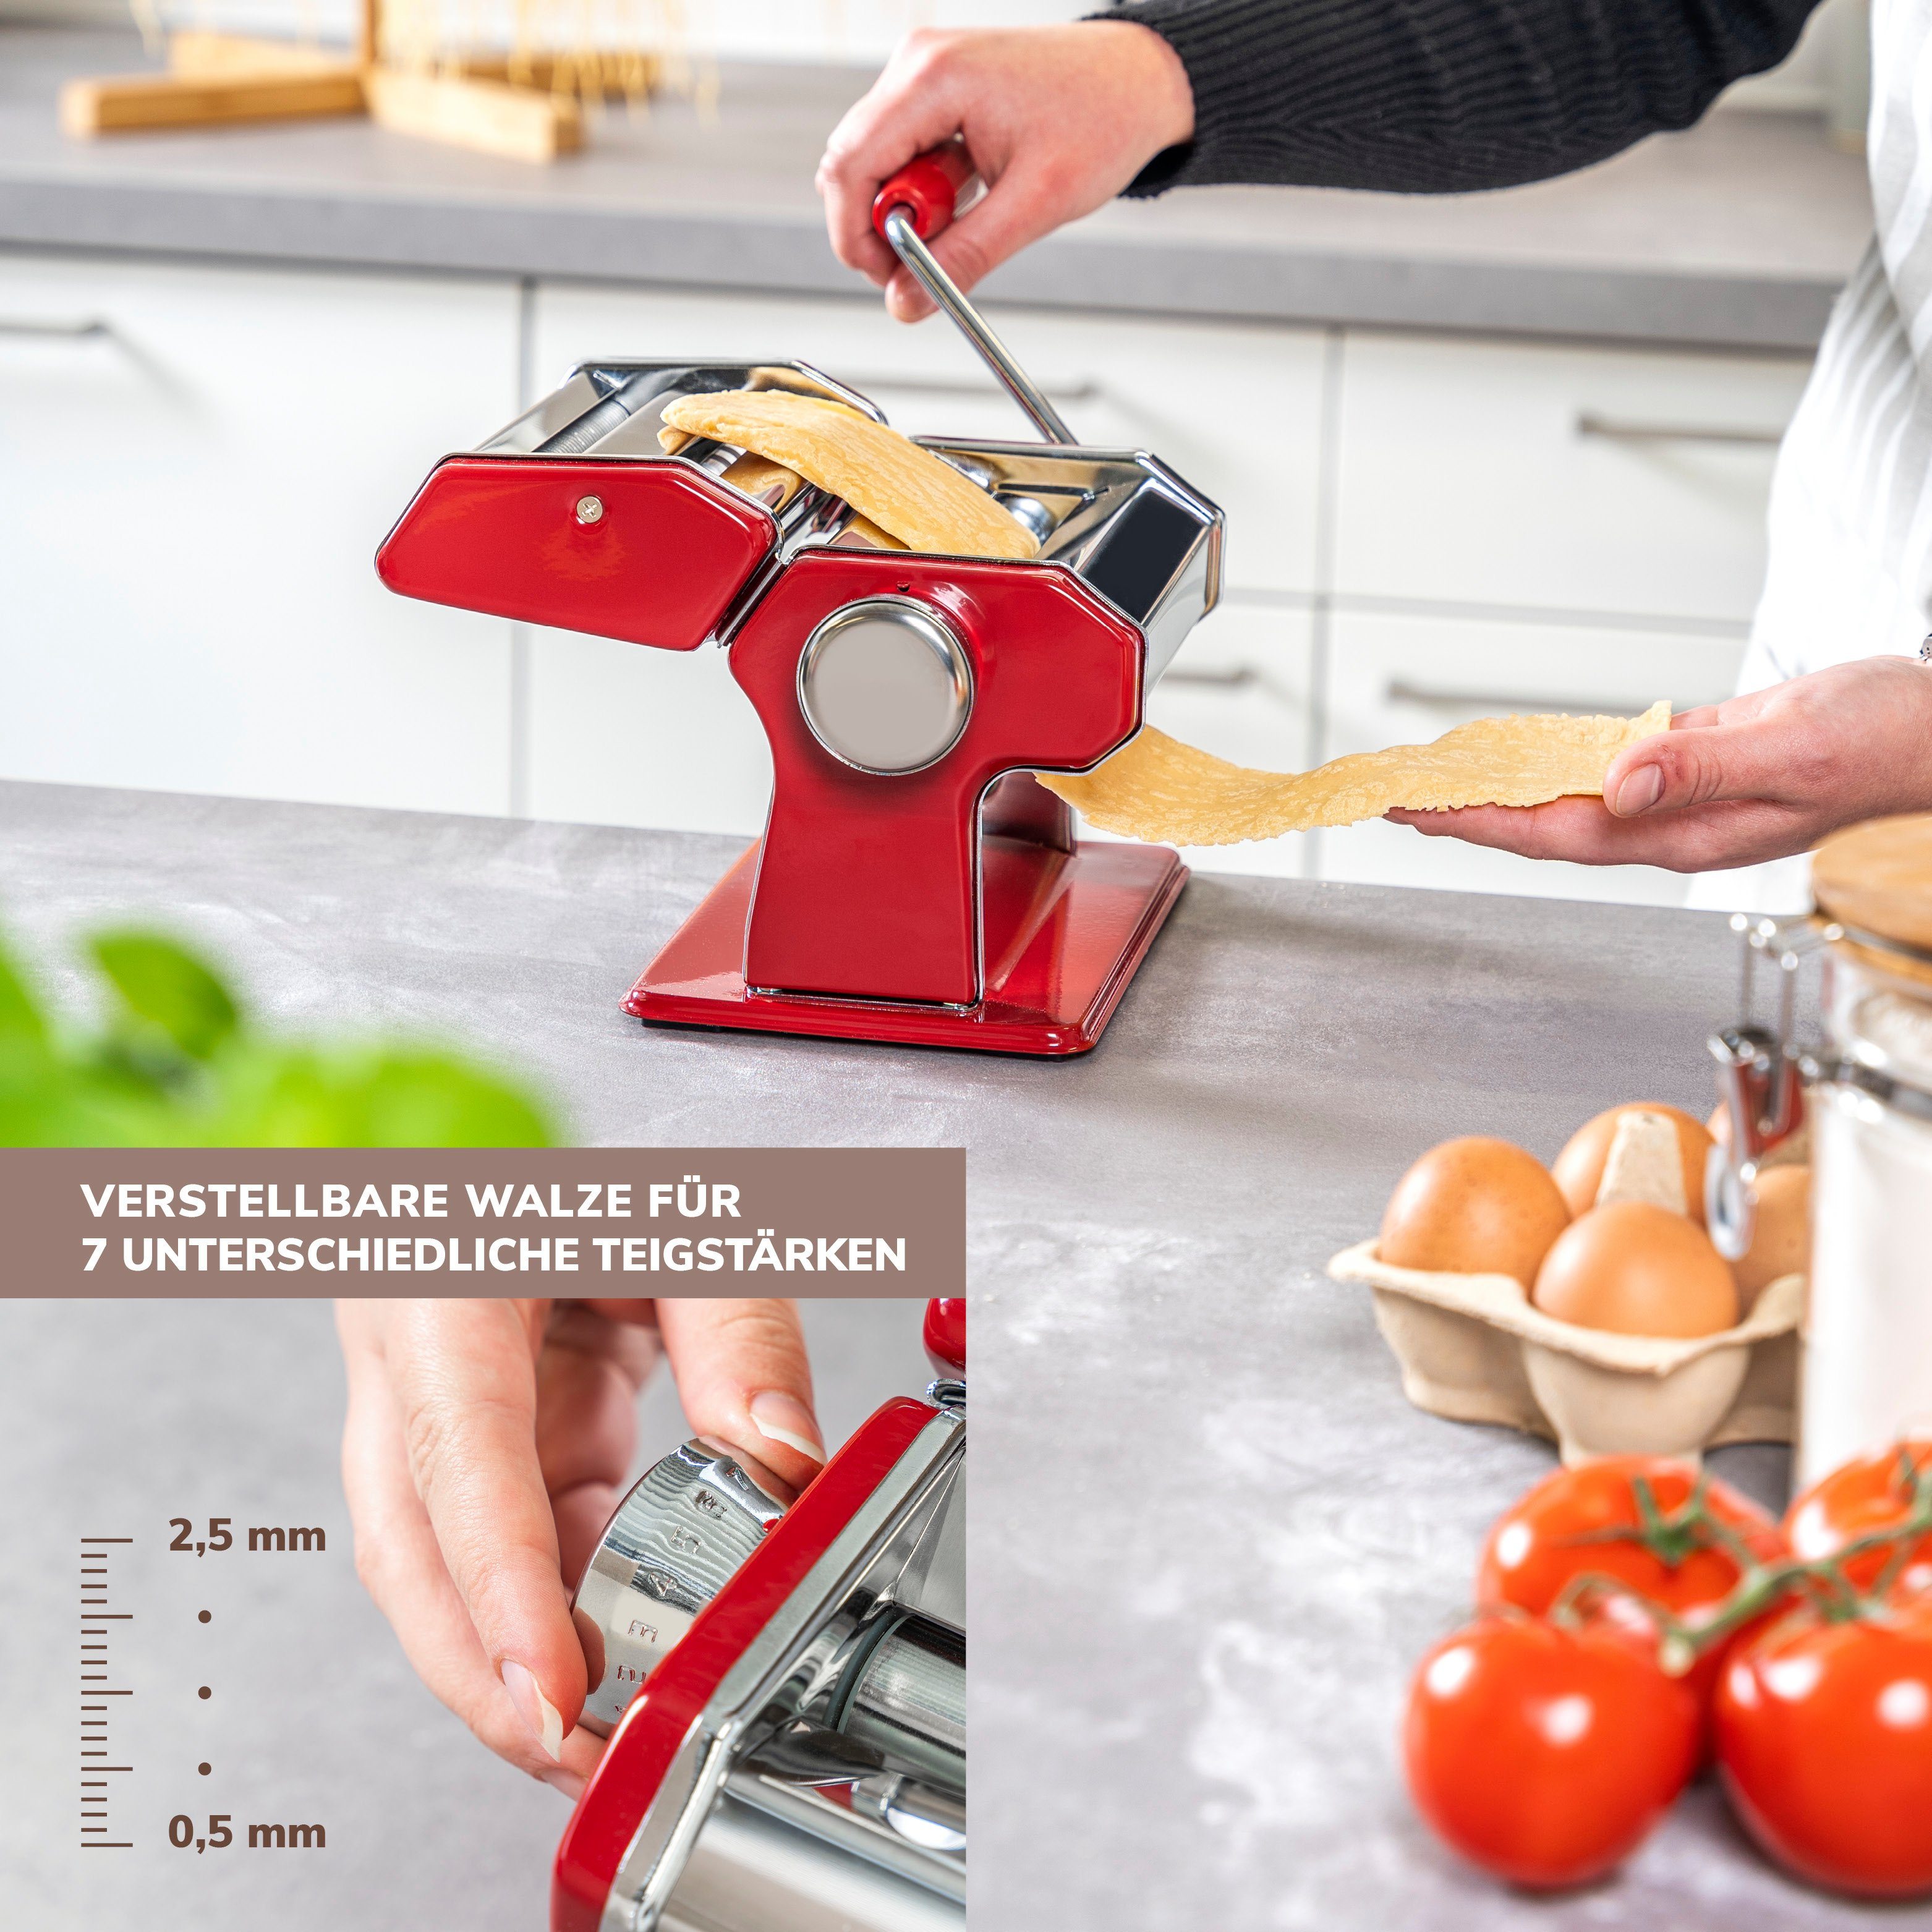 bremermann Nudelmaschine bremermann Spaghetti, Edelstahl/Metall rot Pasta, Nudelmaschine - Edelstahl für 7 Stufen